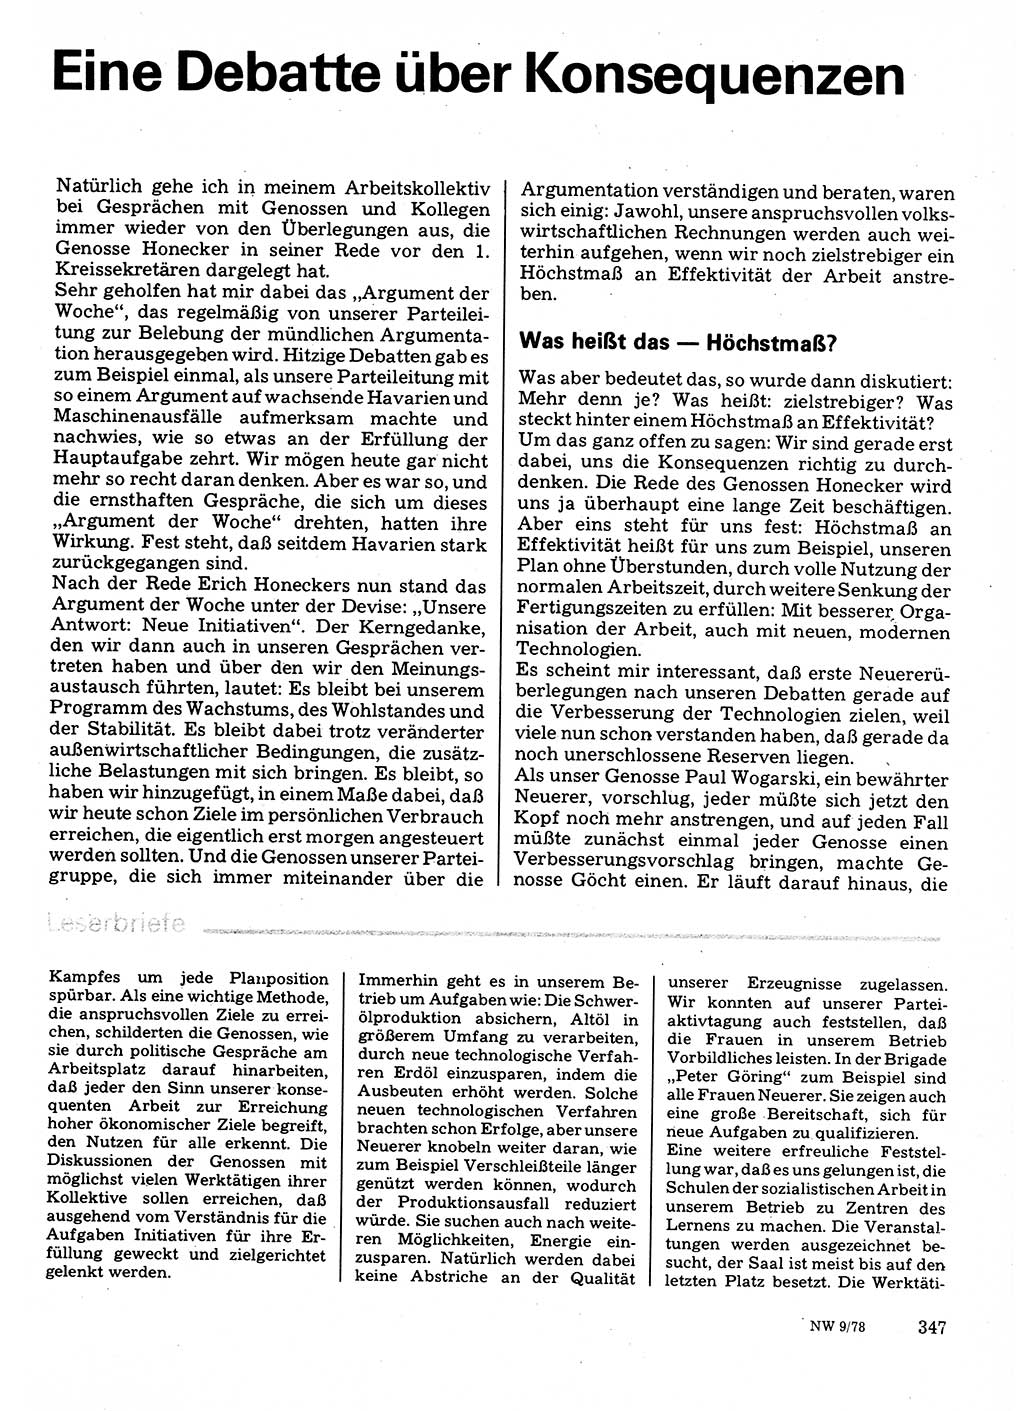 Neuer Weg (NW), Organ des Zentralkomitees (ZK) der SED (Sozialistische Einheitspartei Deutschlands) für Fragen des Parteilebens, 33. Jahrgang [Deutsche Demokratische Republik (DDR)] 1978, Seite 347 (NW ZK SED DDR 1978, S. 347)